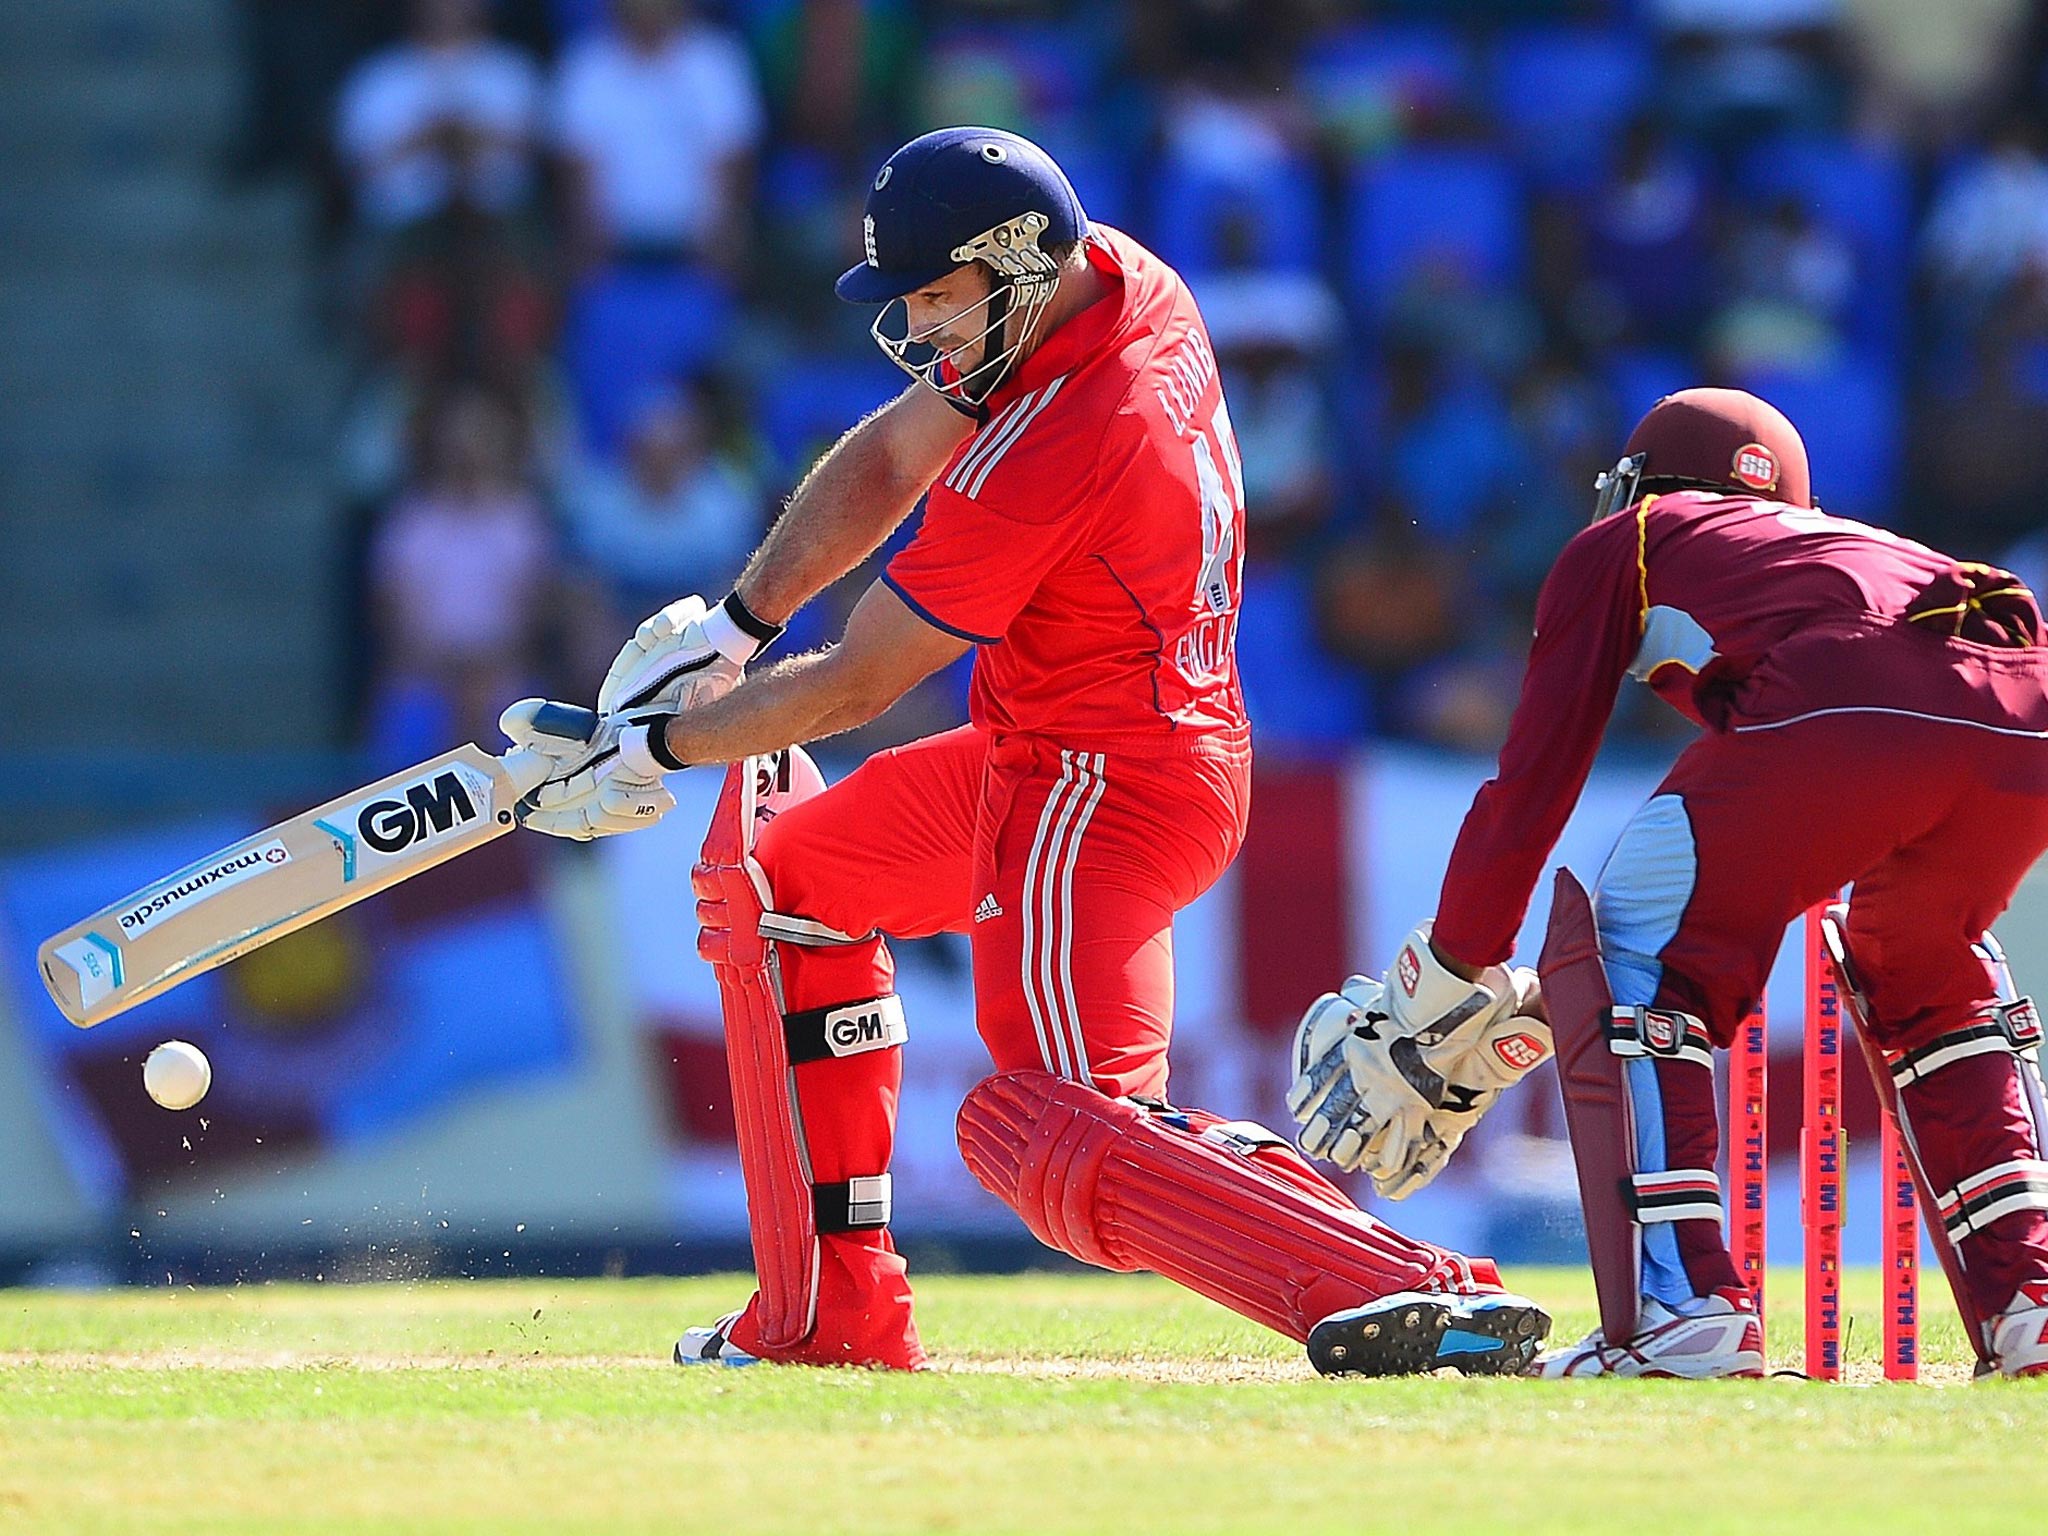 Michael Lumb made 106 on his ODI debut for England